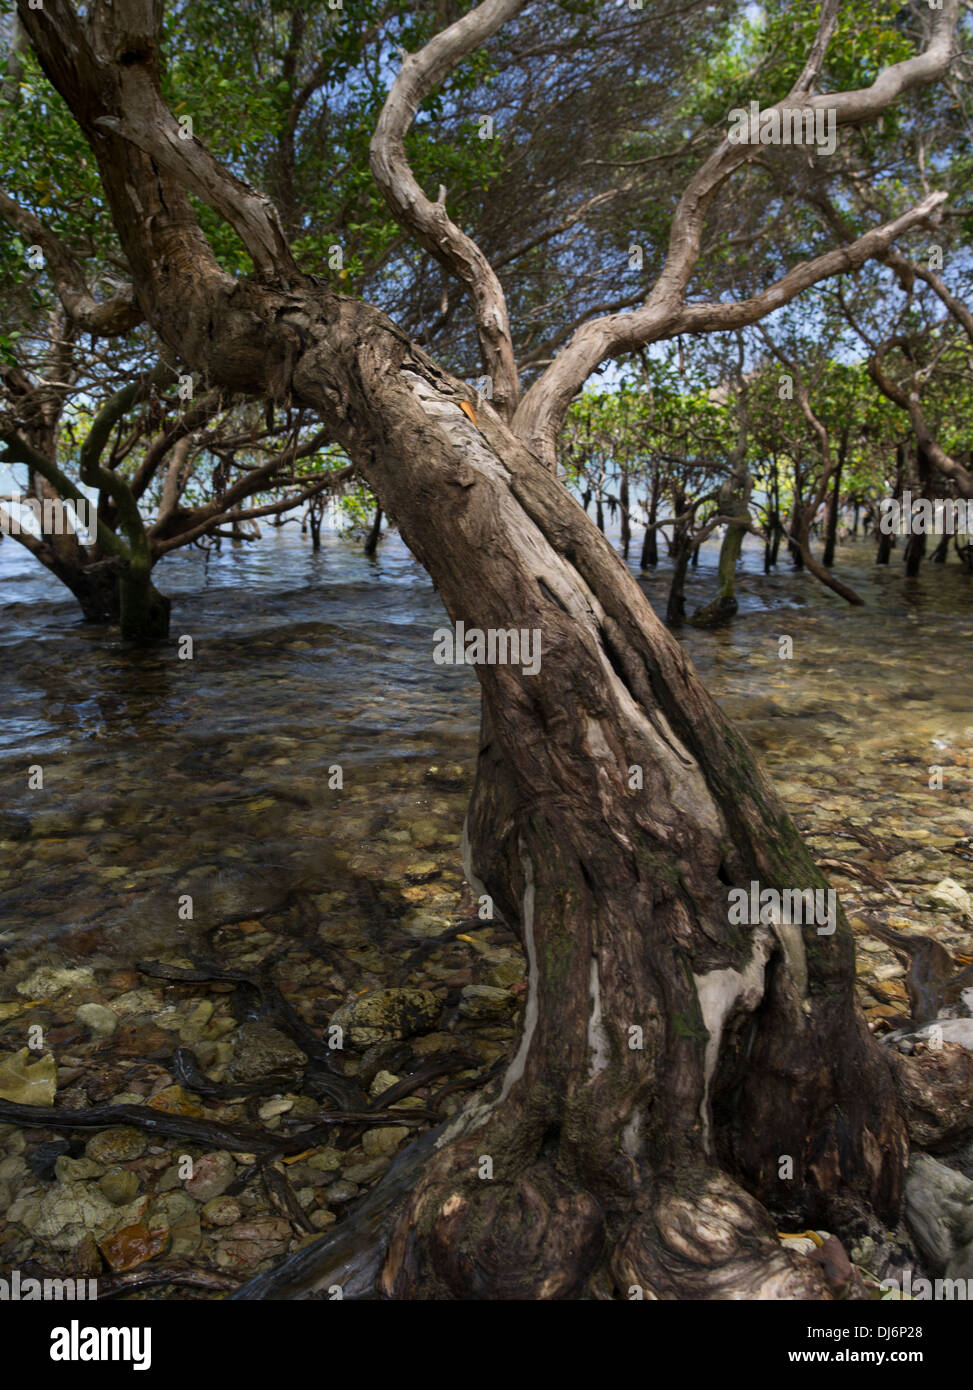 Los mangles Loloata Isla cerca de Port Moresby, Papua Nueva Guinea Foto de stock